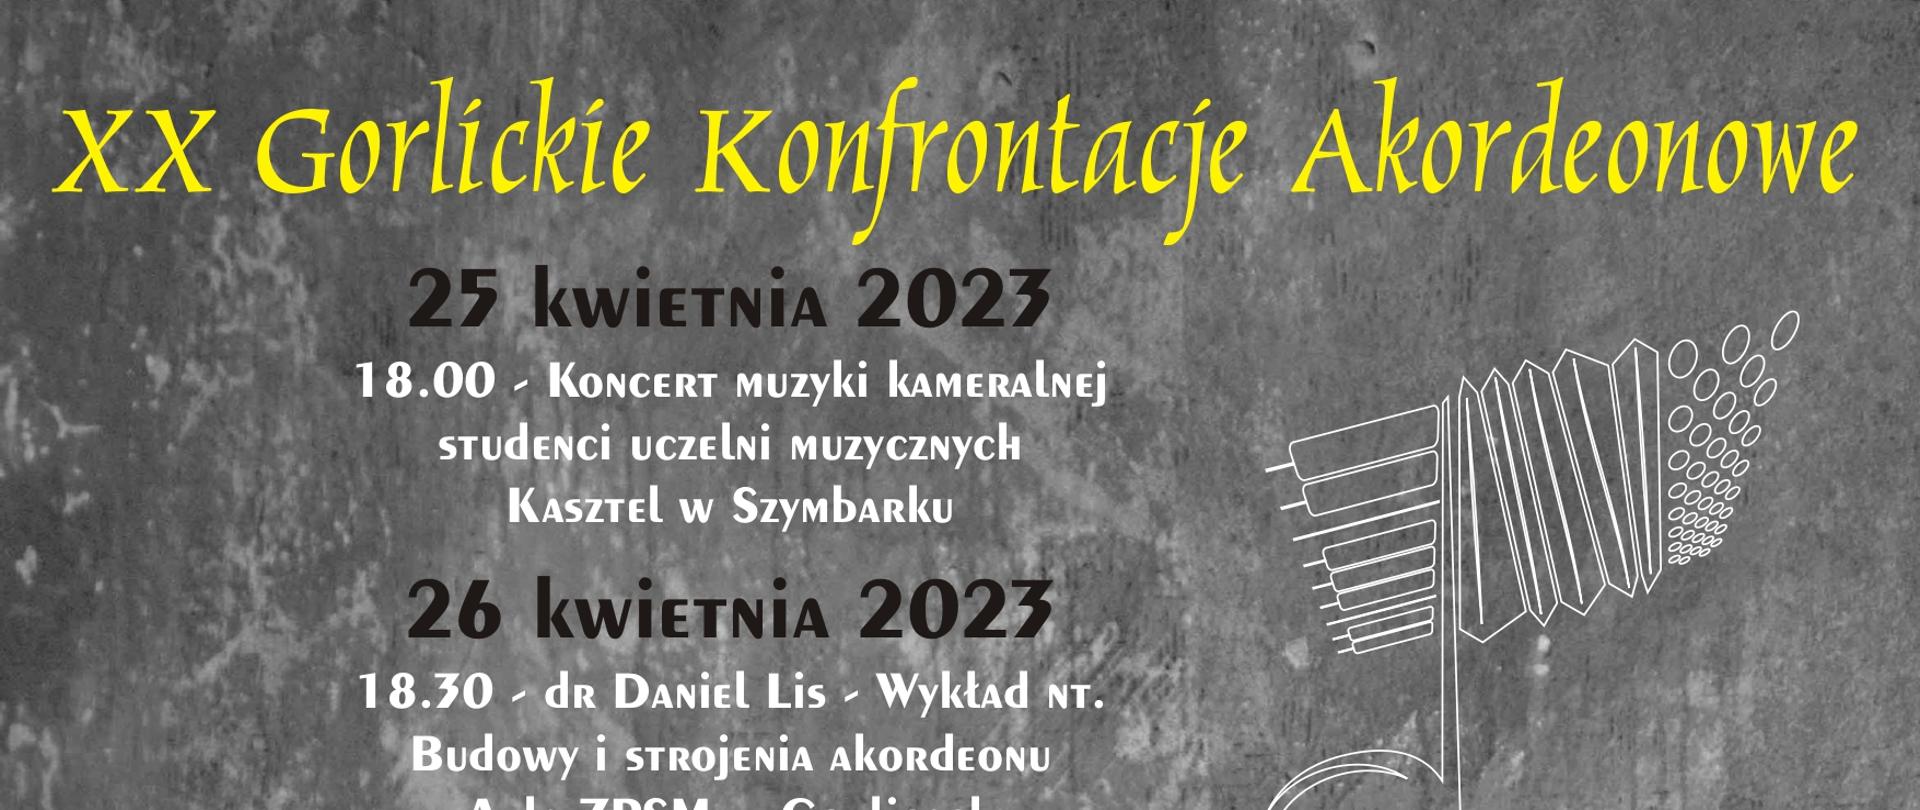 Plakat XX Gorlickich Konfrontacji Akordeonowych - 25-27 kwietnia. Akordeon w tle. 